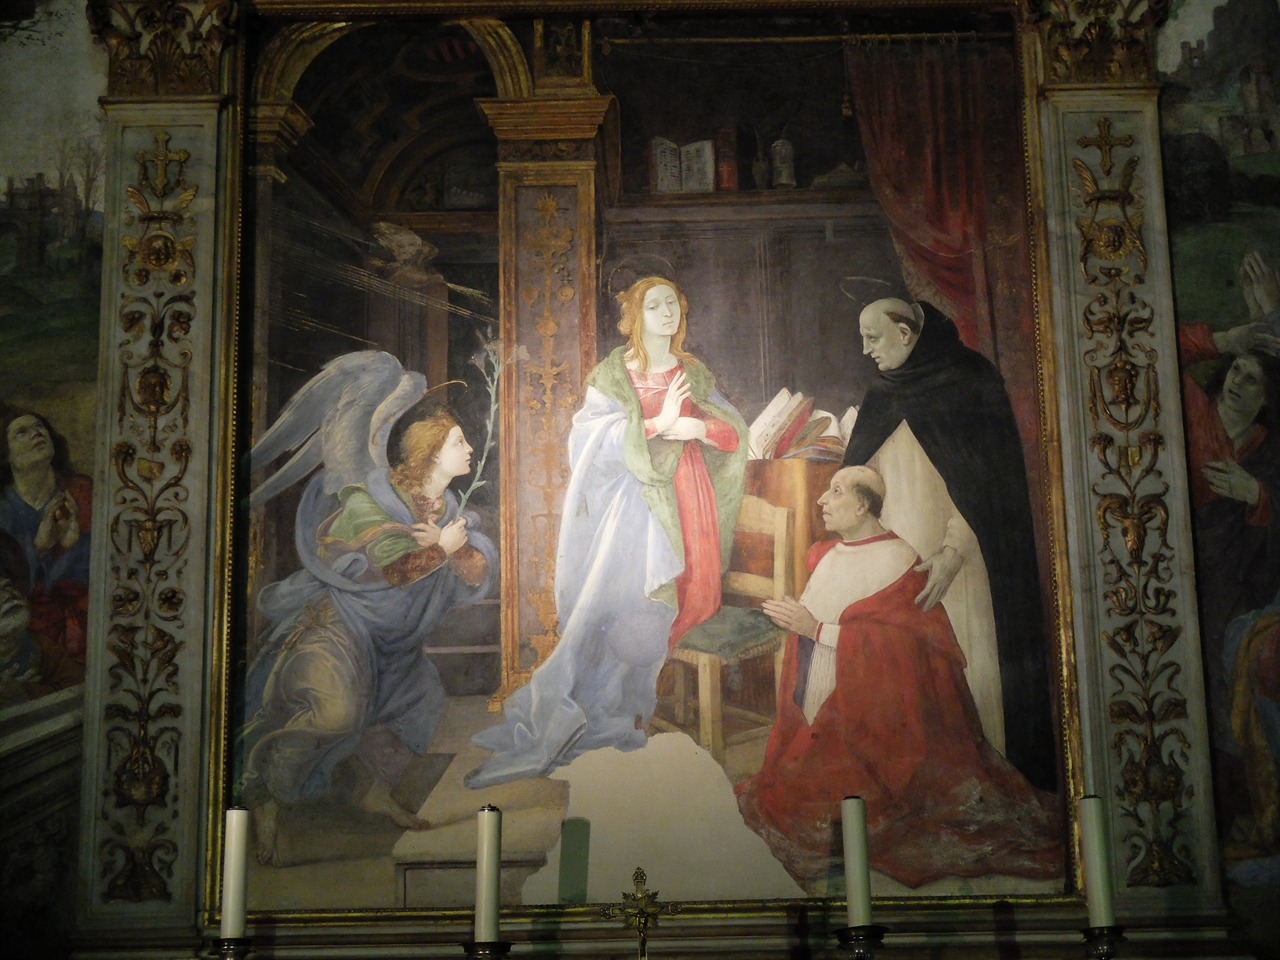 필리피노 리피 '수태고지' 로마 산타 마리아 소프라 미네르바 성당. 아버지 필리포 리피와 마찬가지로 '수태고지'에 주문자들을 그려 놓았다.